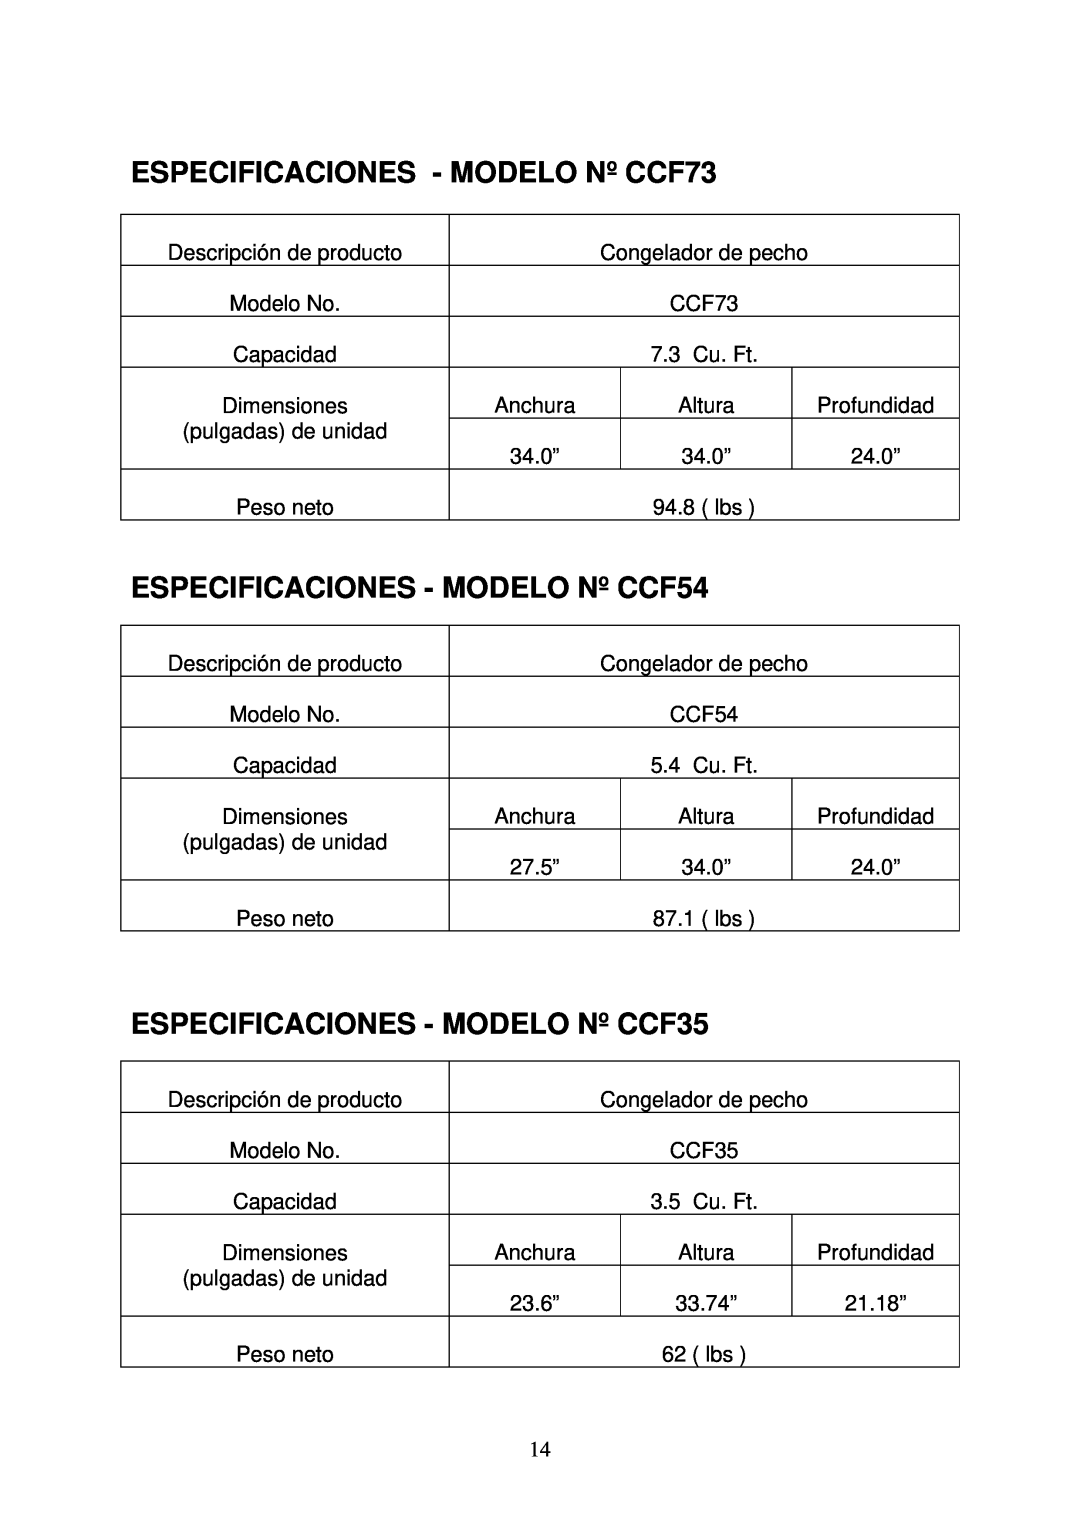 Crosley ESPECIFICACIONES - MODELO Nº CCF73, ESPECIFICACIONES - MODELO Nº CCF54, ESPECIFICACIONES - MODELO Nº CCF35 